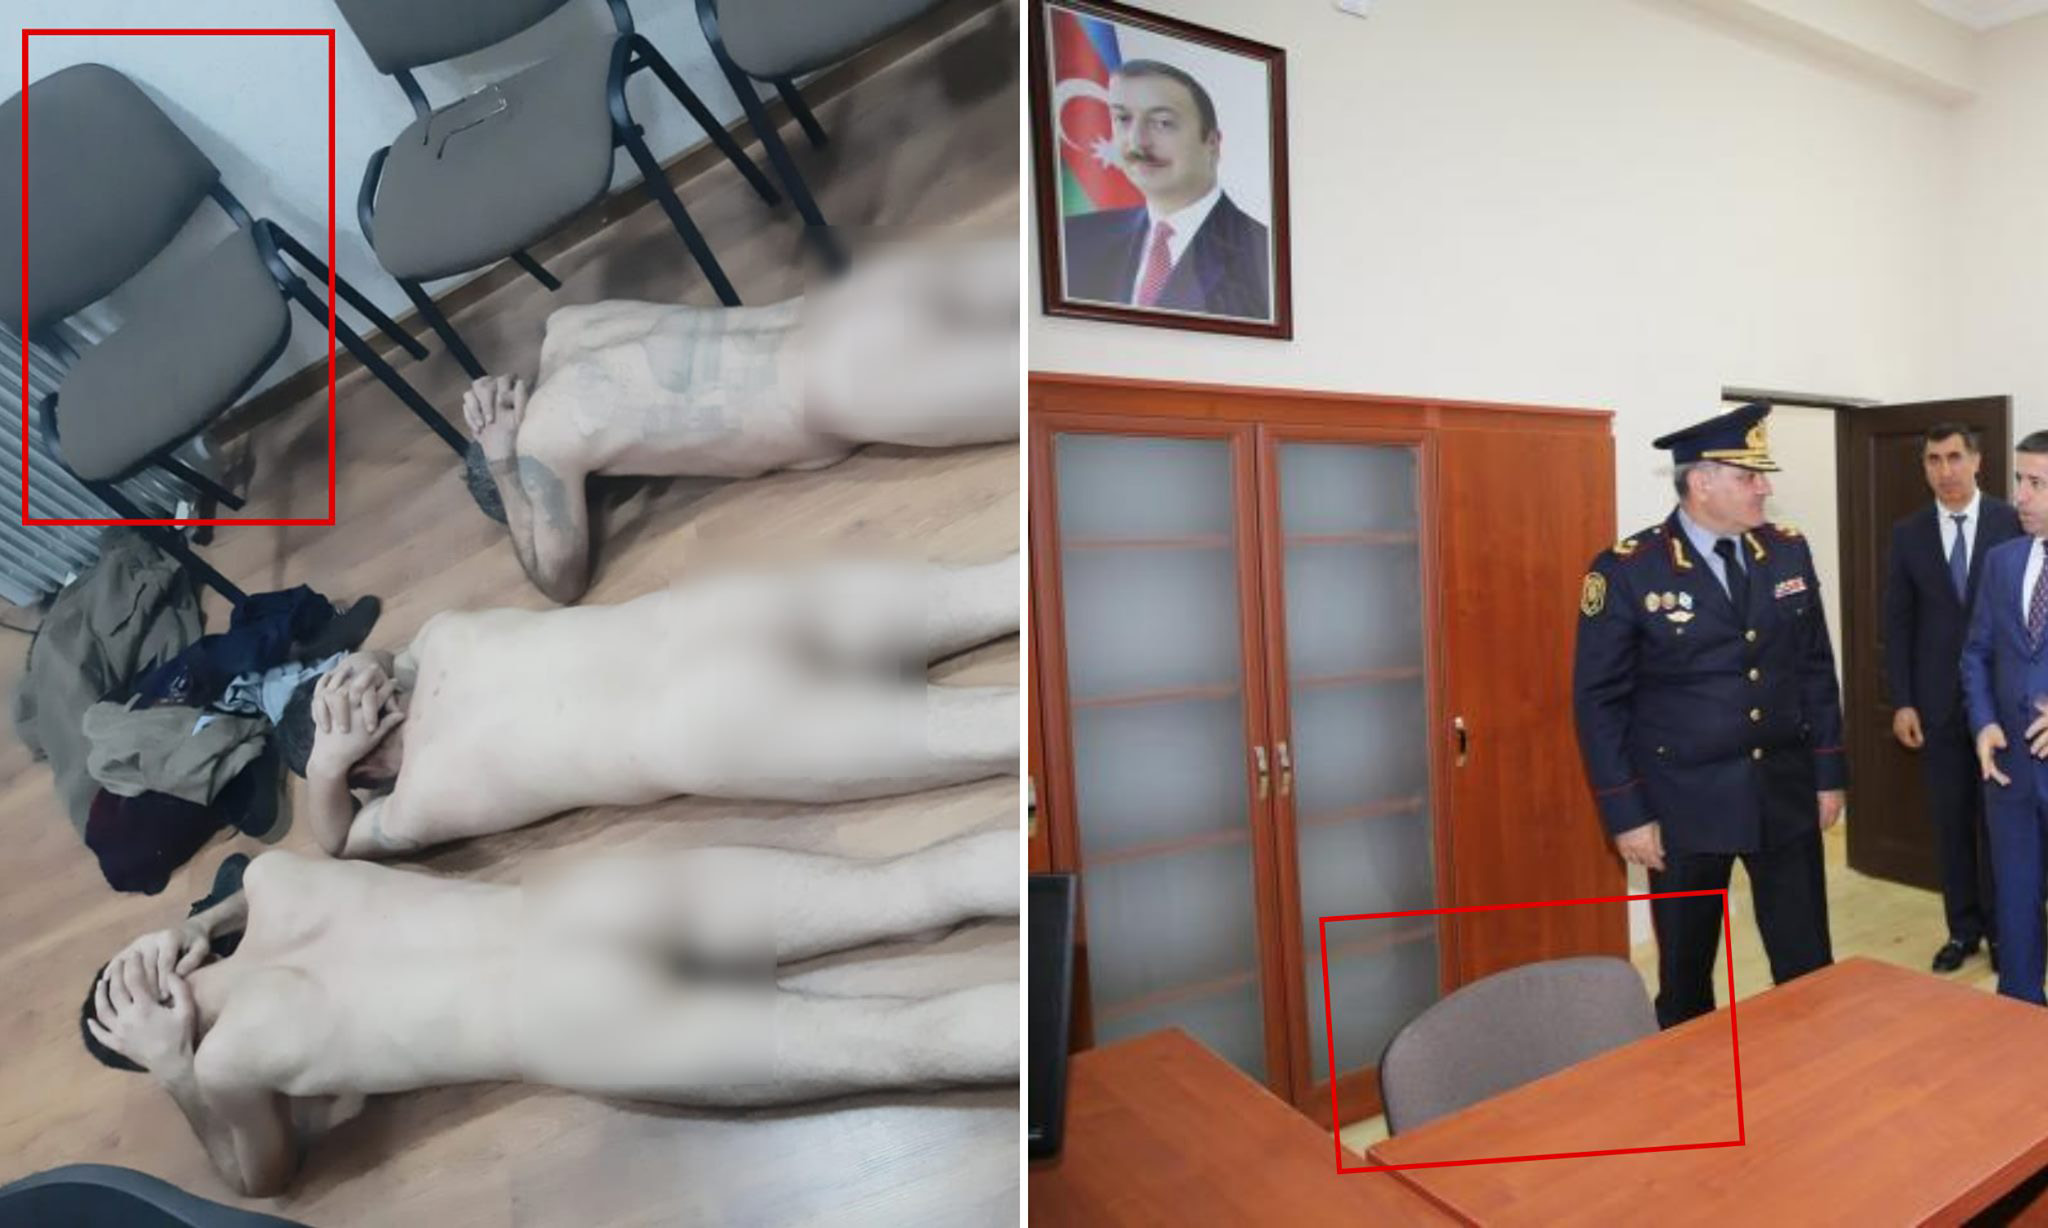 Мунтазир заявил, что мебель и стулья на фотографиях соответствуют стандартной обстановке в полицейских участках Азербайджана. Фото: Хабиб Мунтазир